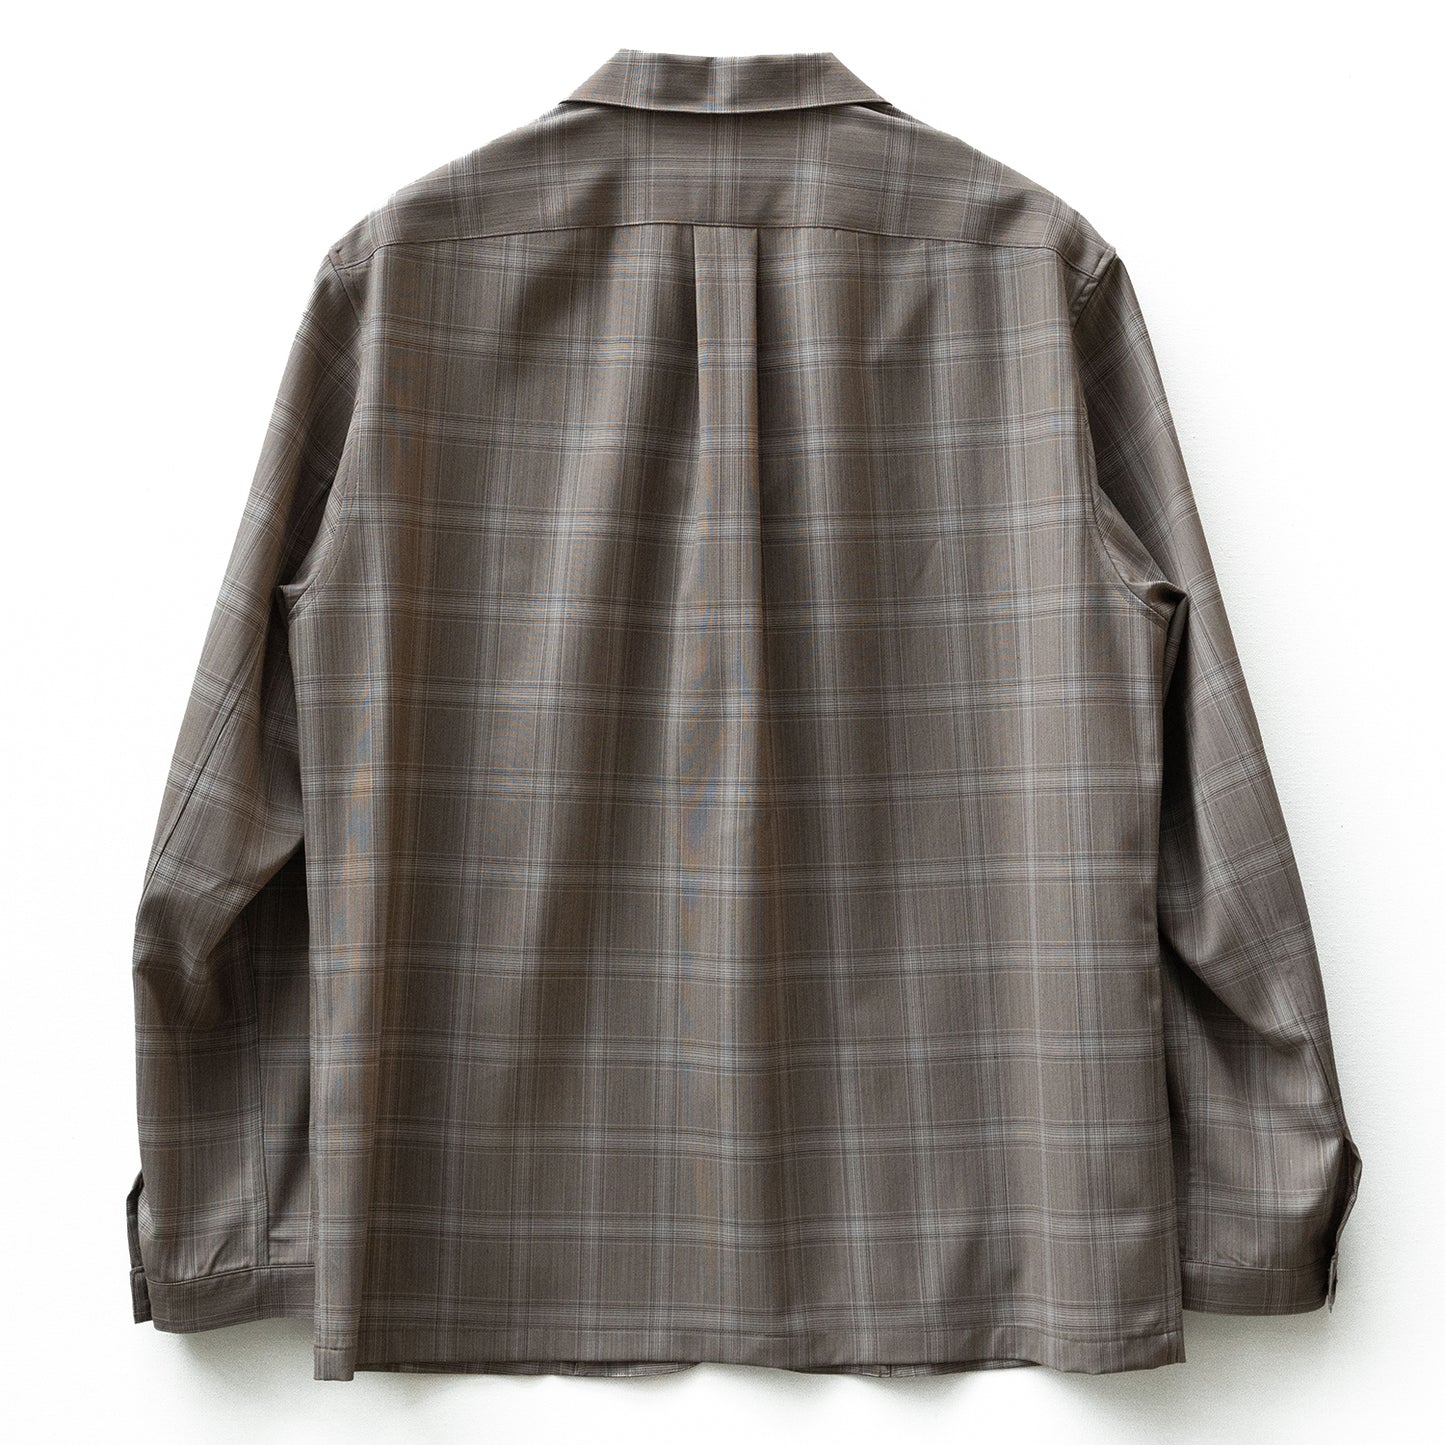 COLONY CLOTHING / テックウール シャツジャケット / CC2301-JK01S-3